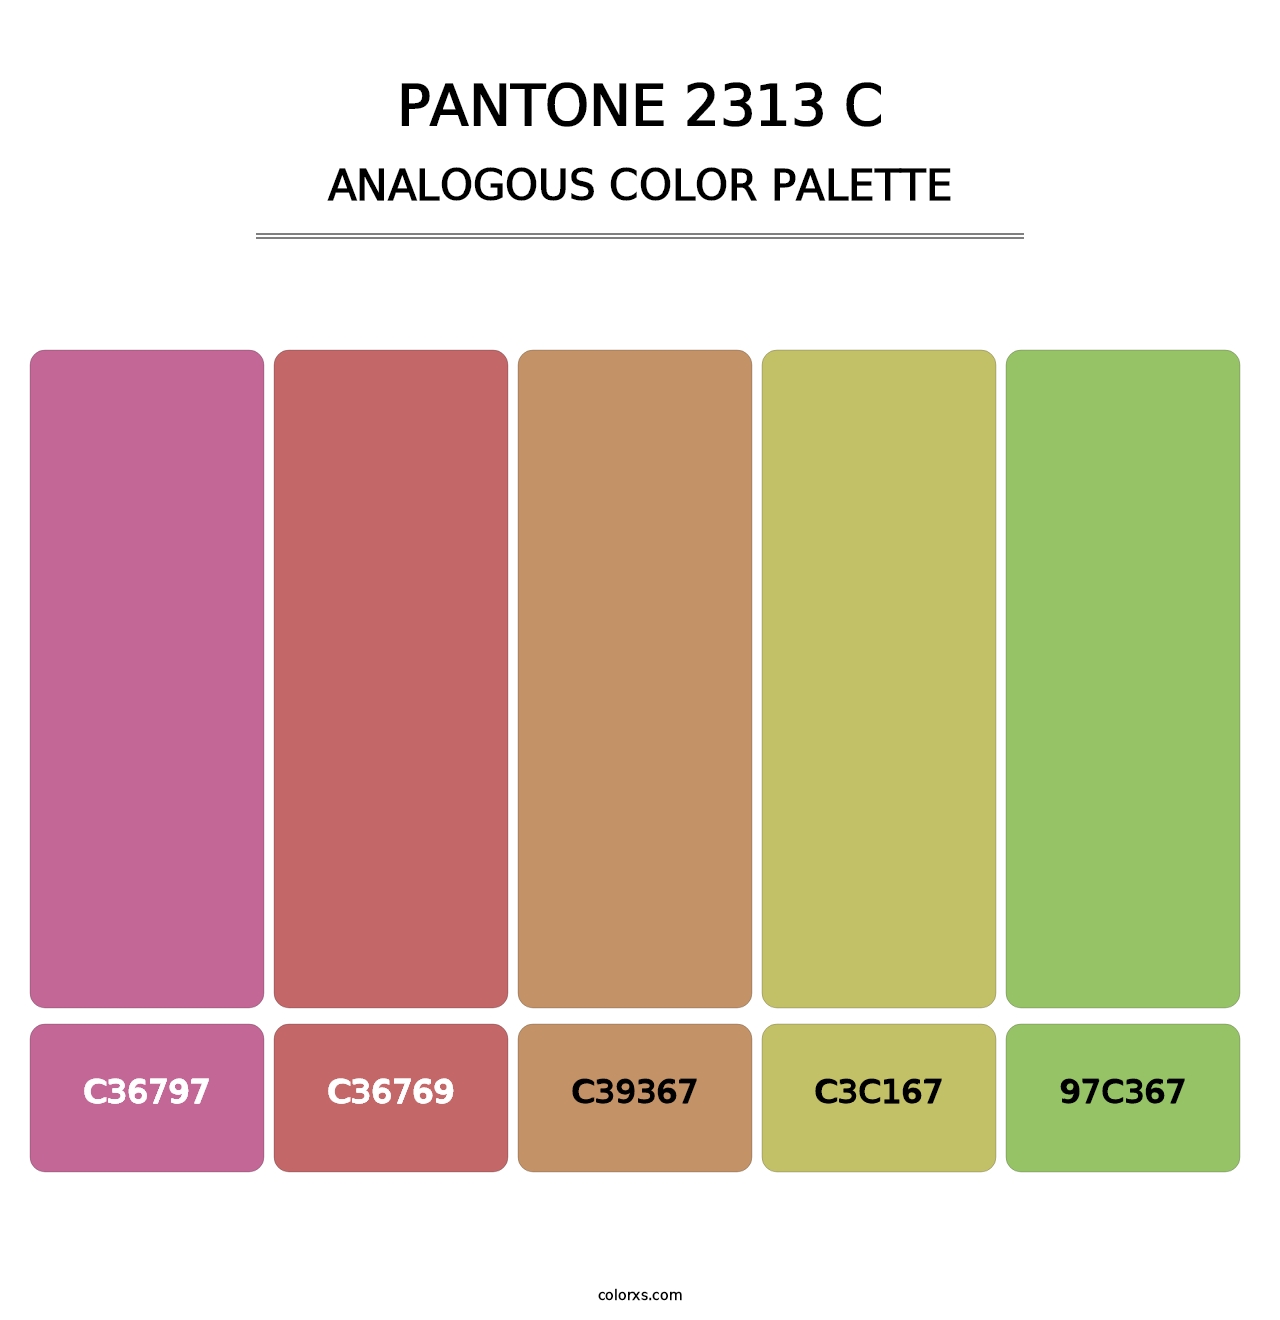 PANTONE 2313 C - Analogous Color Palette